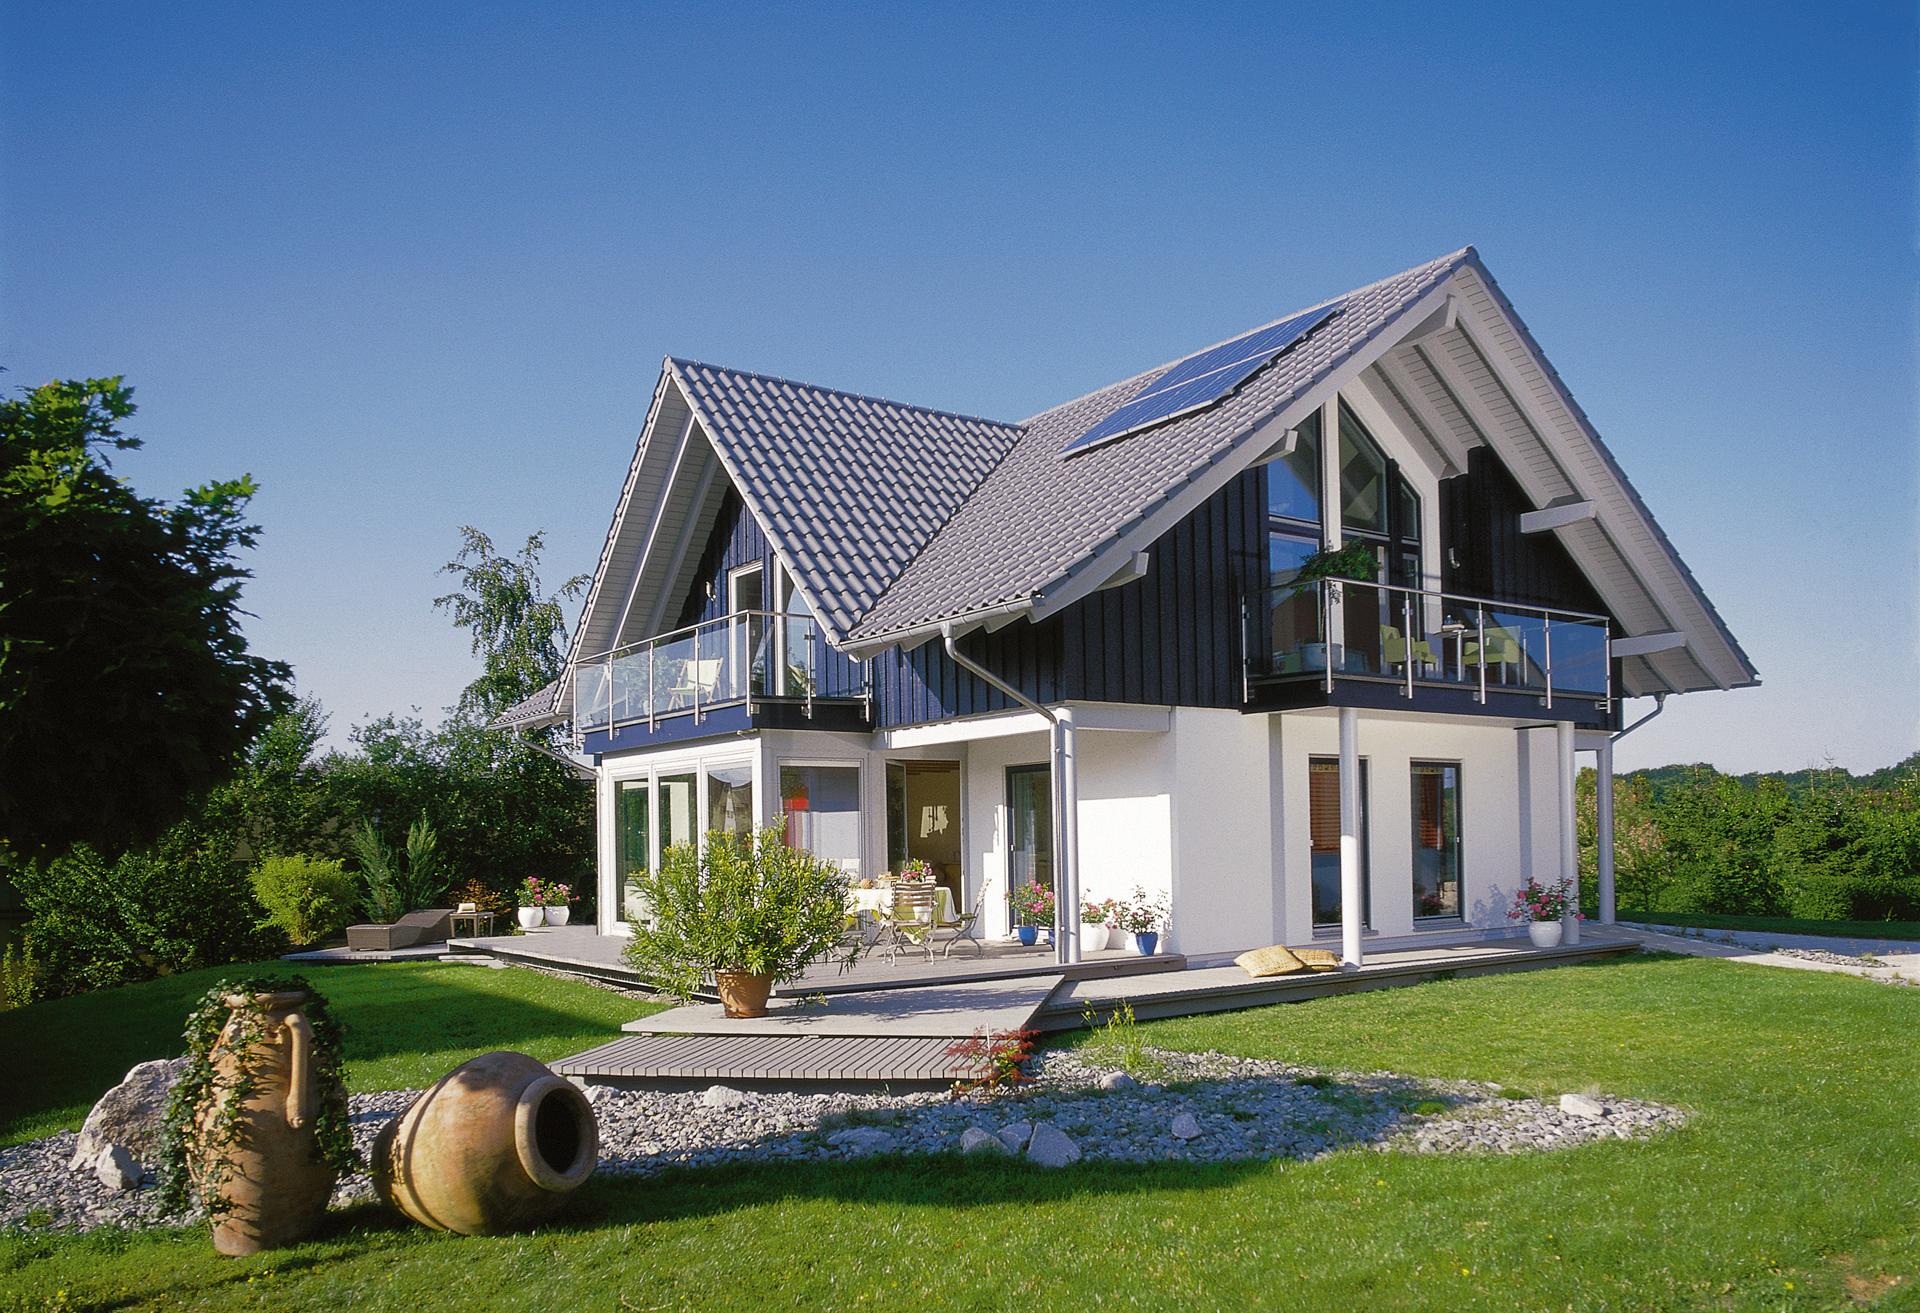 Casa unifamiliare moderna in stile country house con veranda chiusa 